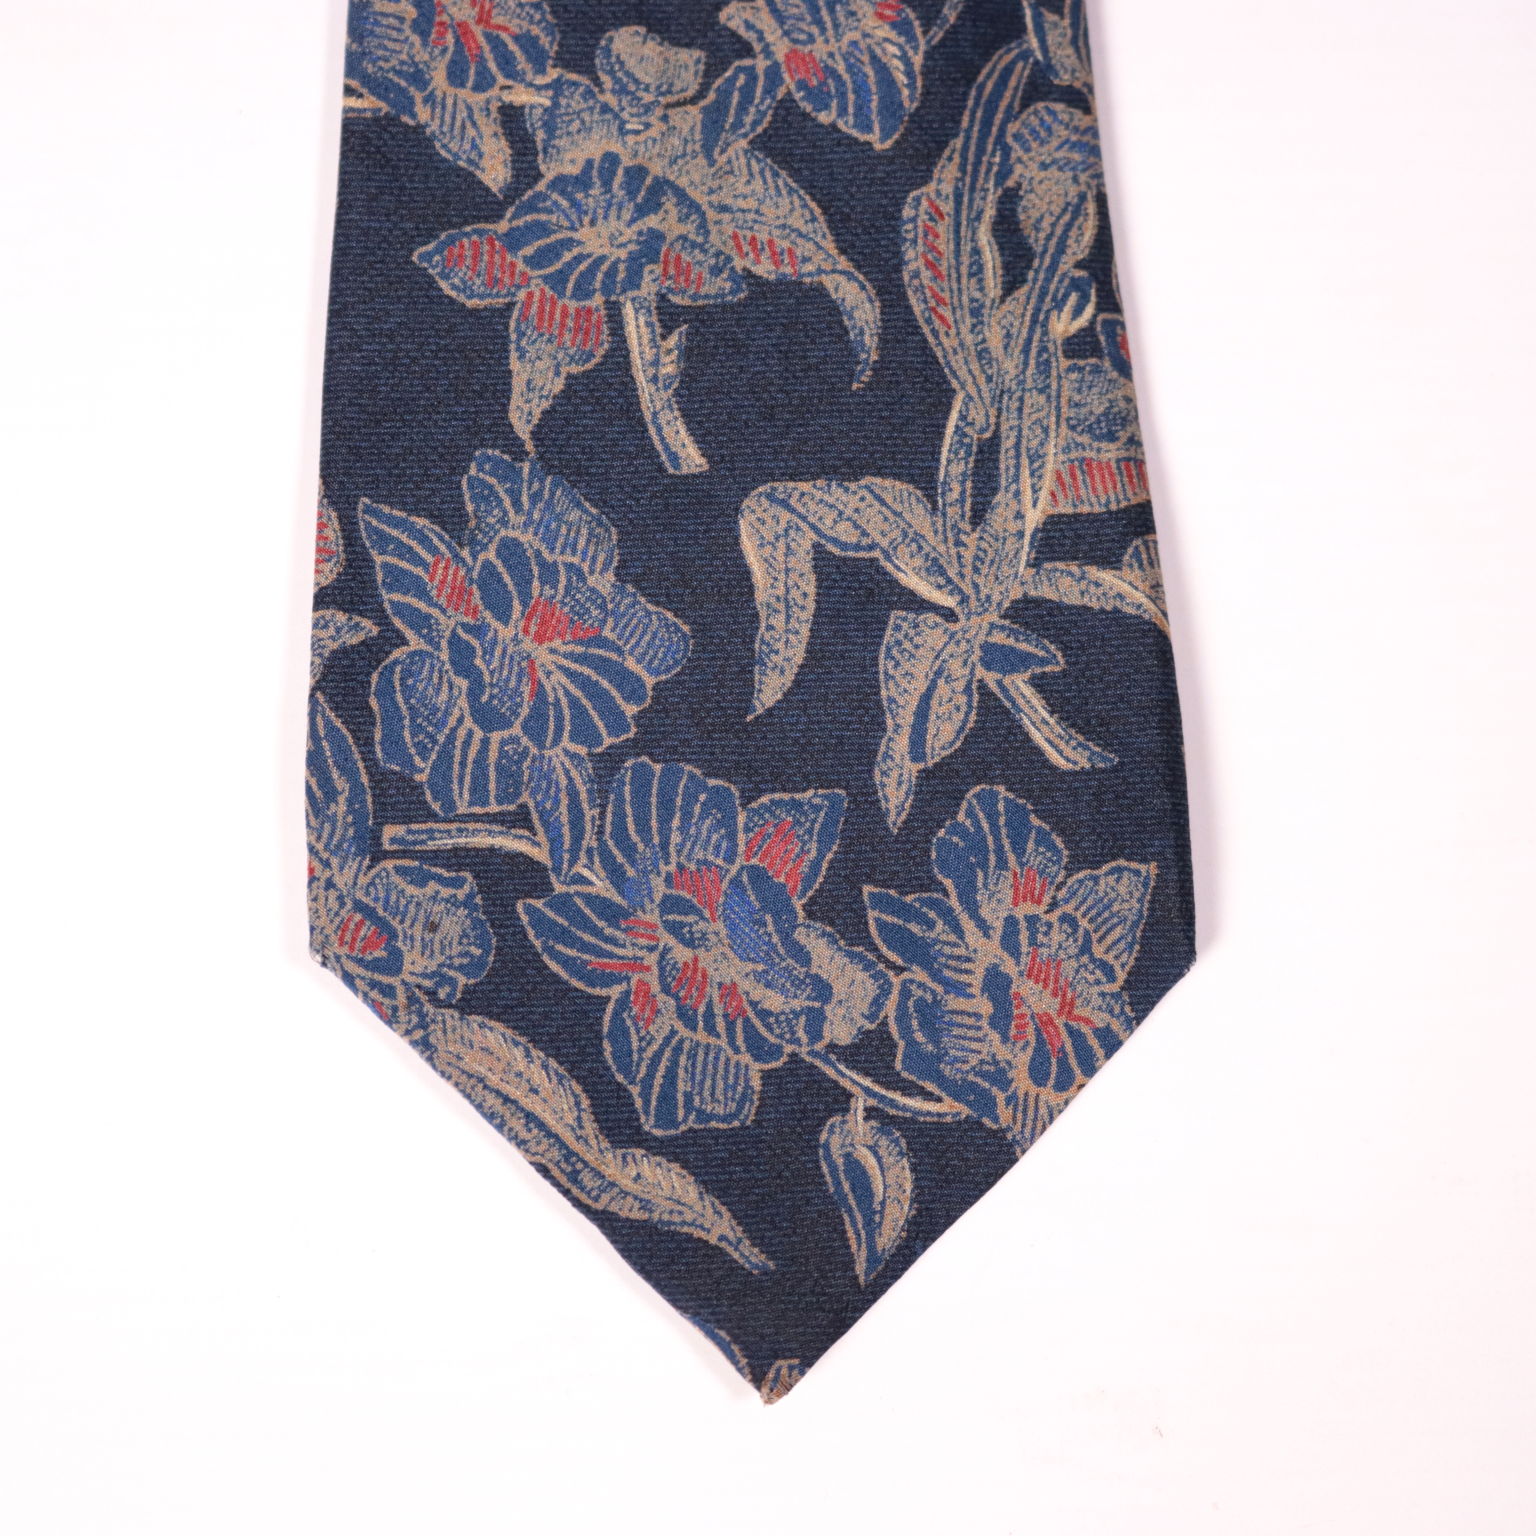 LOUIS VUITTON, Krawatte, Seide. Vintagekleidung & Accessoires - Auctionet